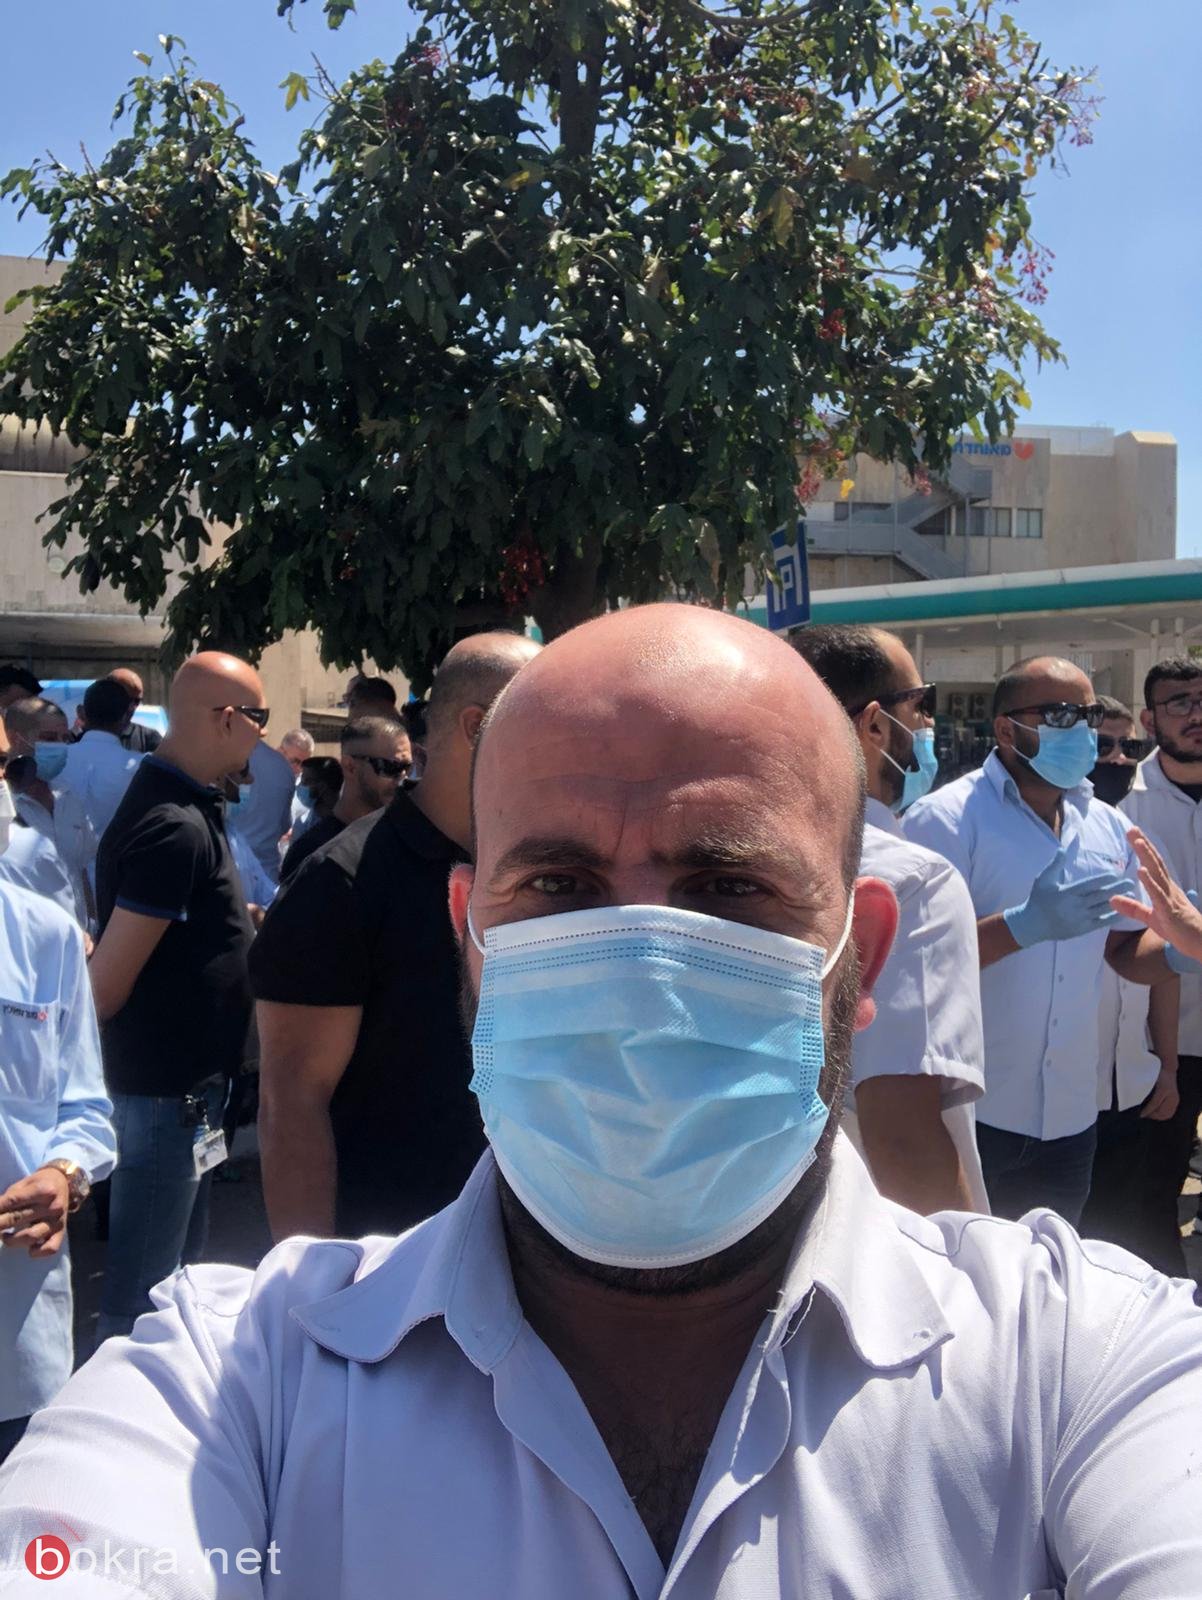 سائقو شركة "متروبولين" العرب يتظاهرون أمام مكاتب الشرطة اعتراضًا على الشروط المجحفة-0